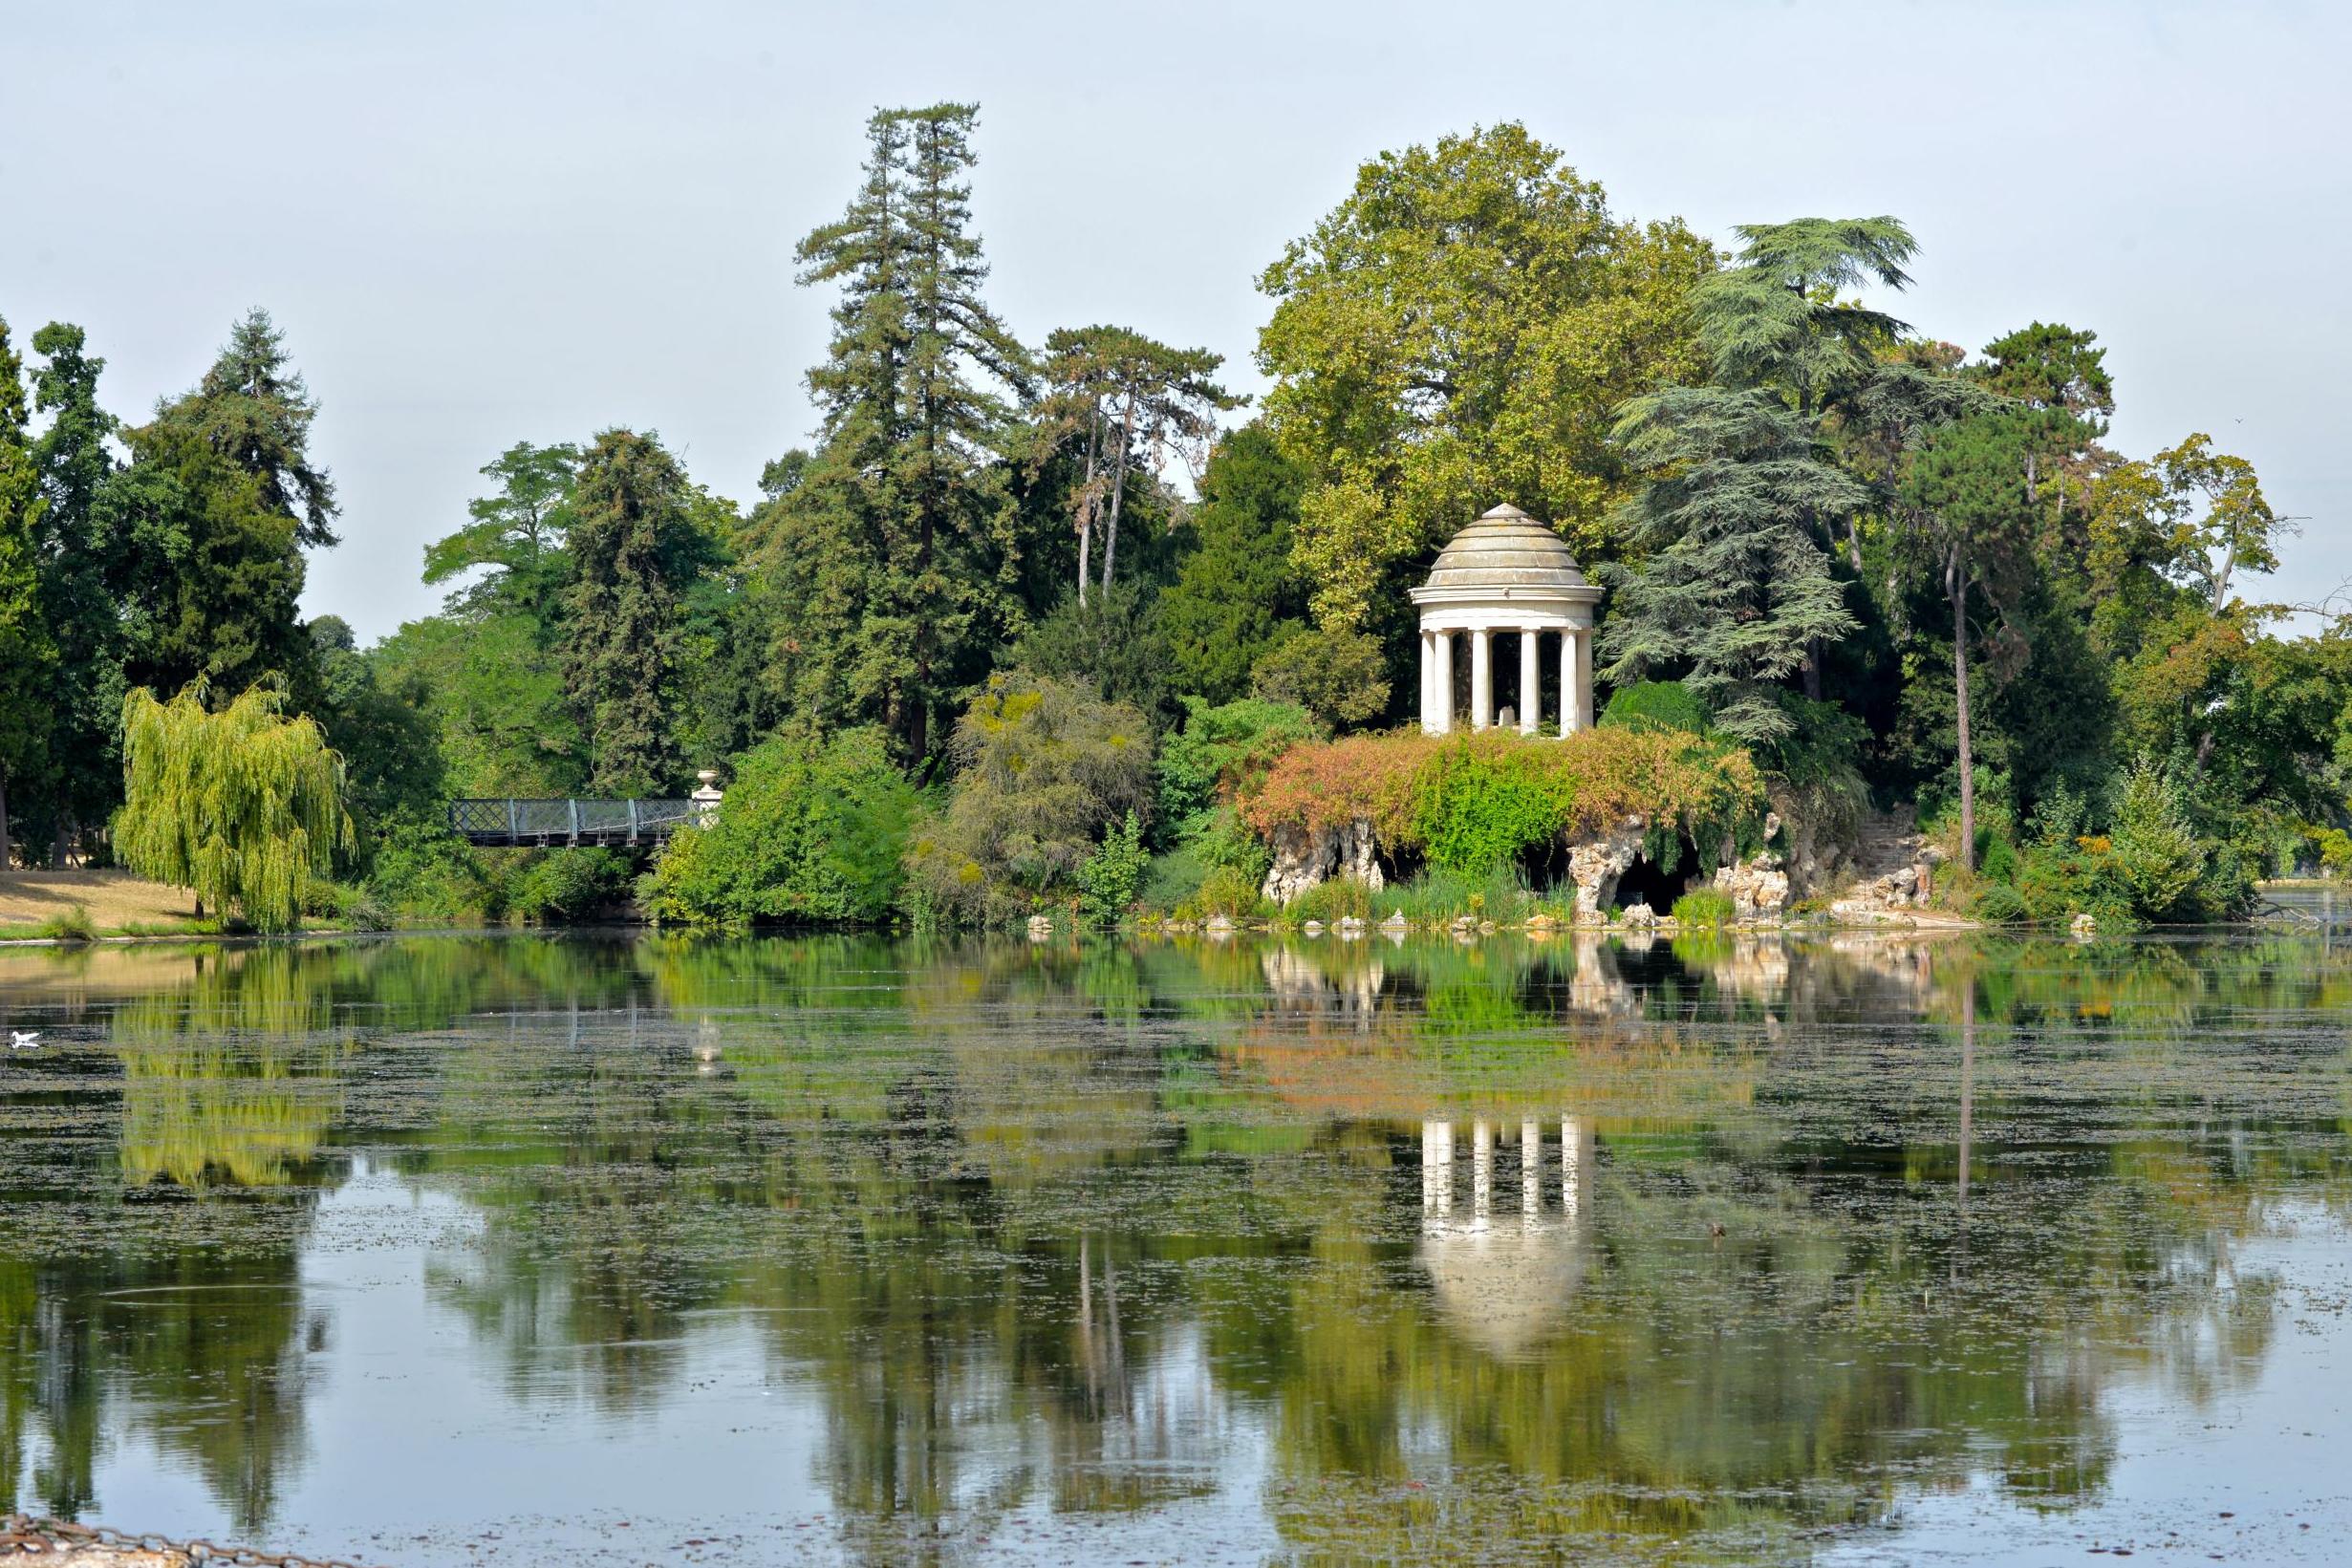 The Bois de Vincennes is the largest public park in the city